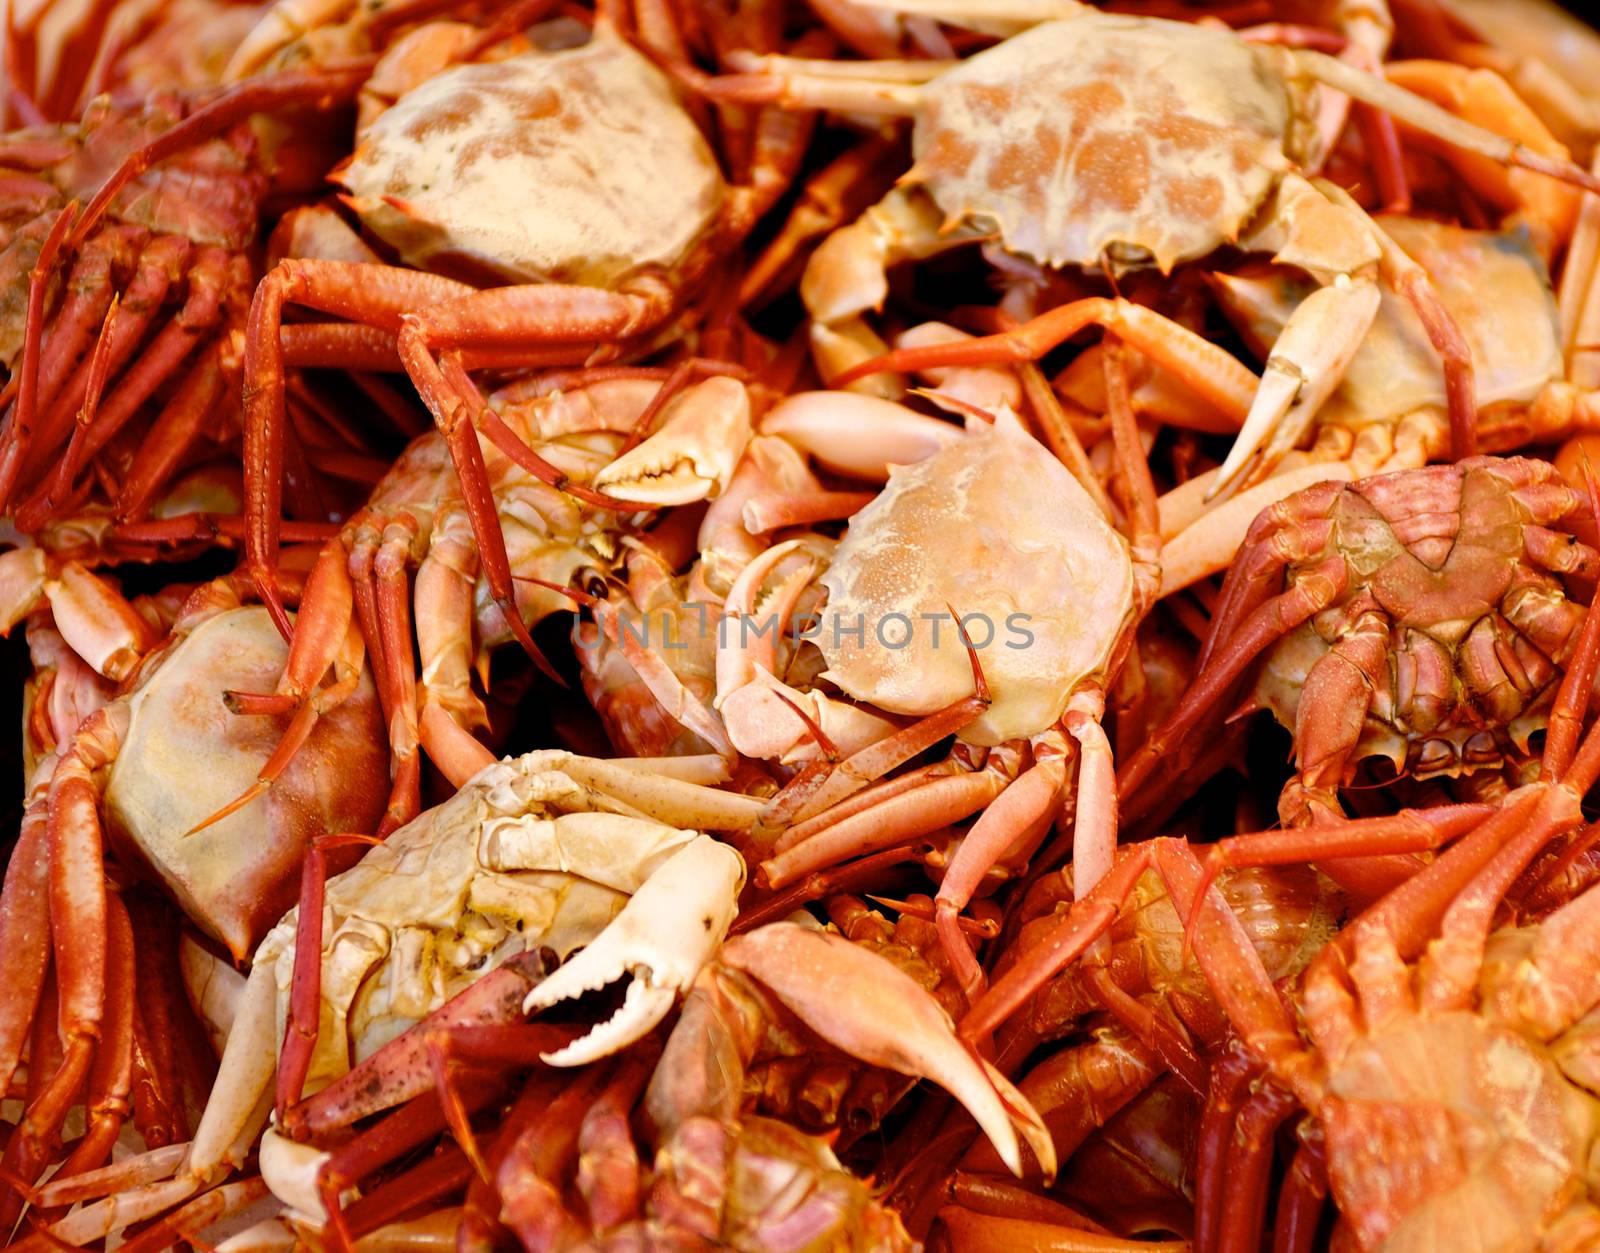 Mediterranean Red Crab Background by zhekos